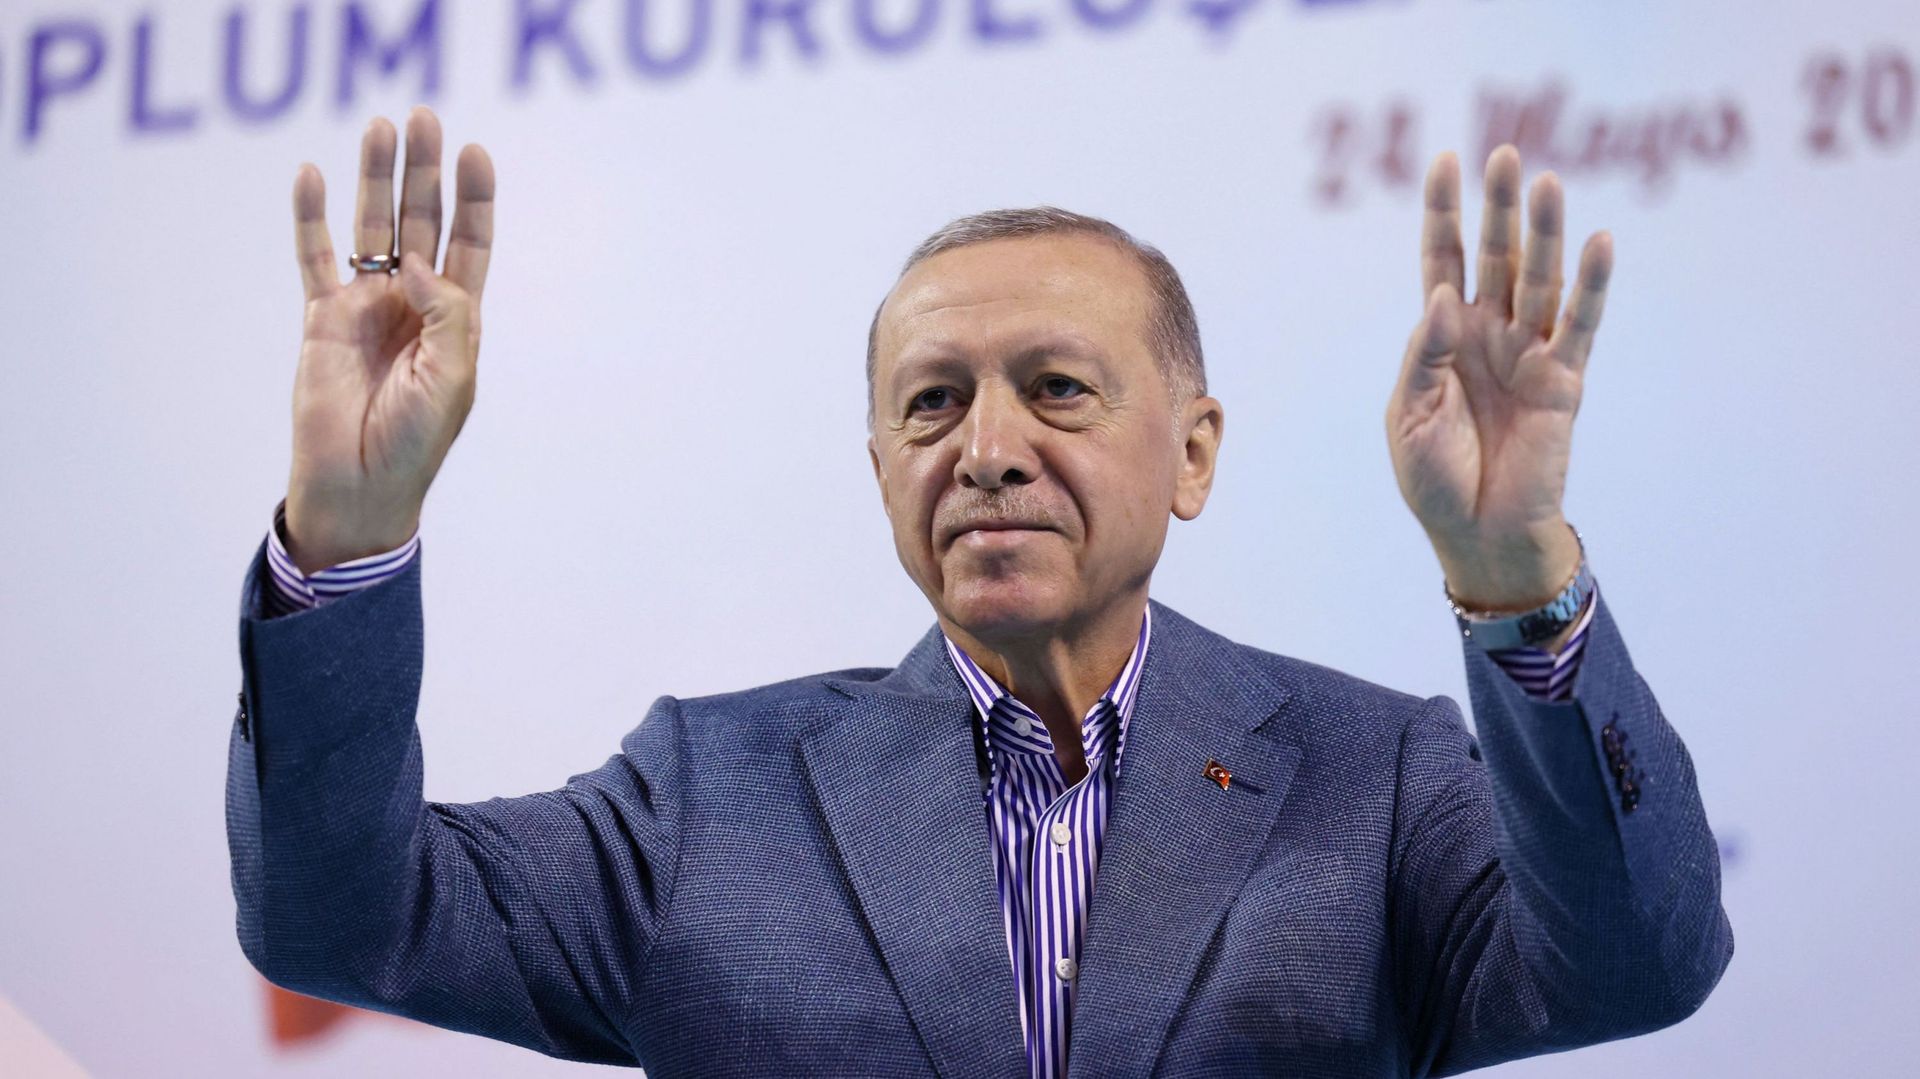 Turquie: Erdogan à plus de 52% au second tour après décompte de 95% des voix